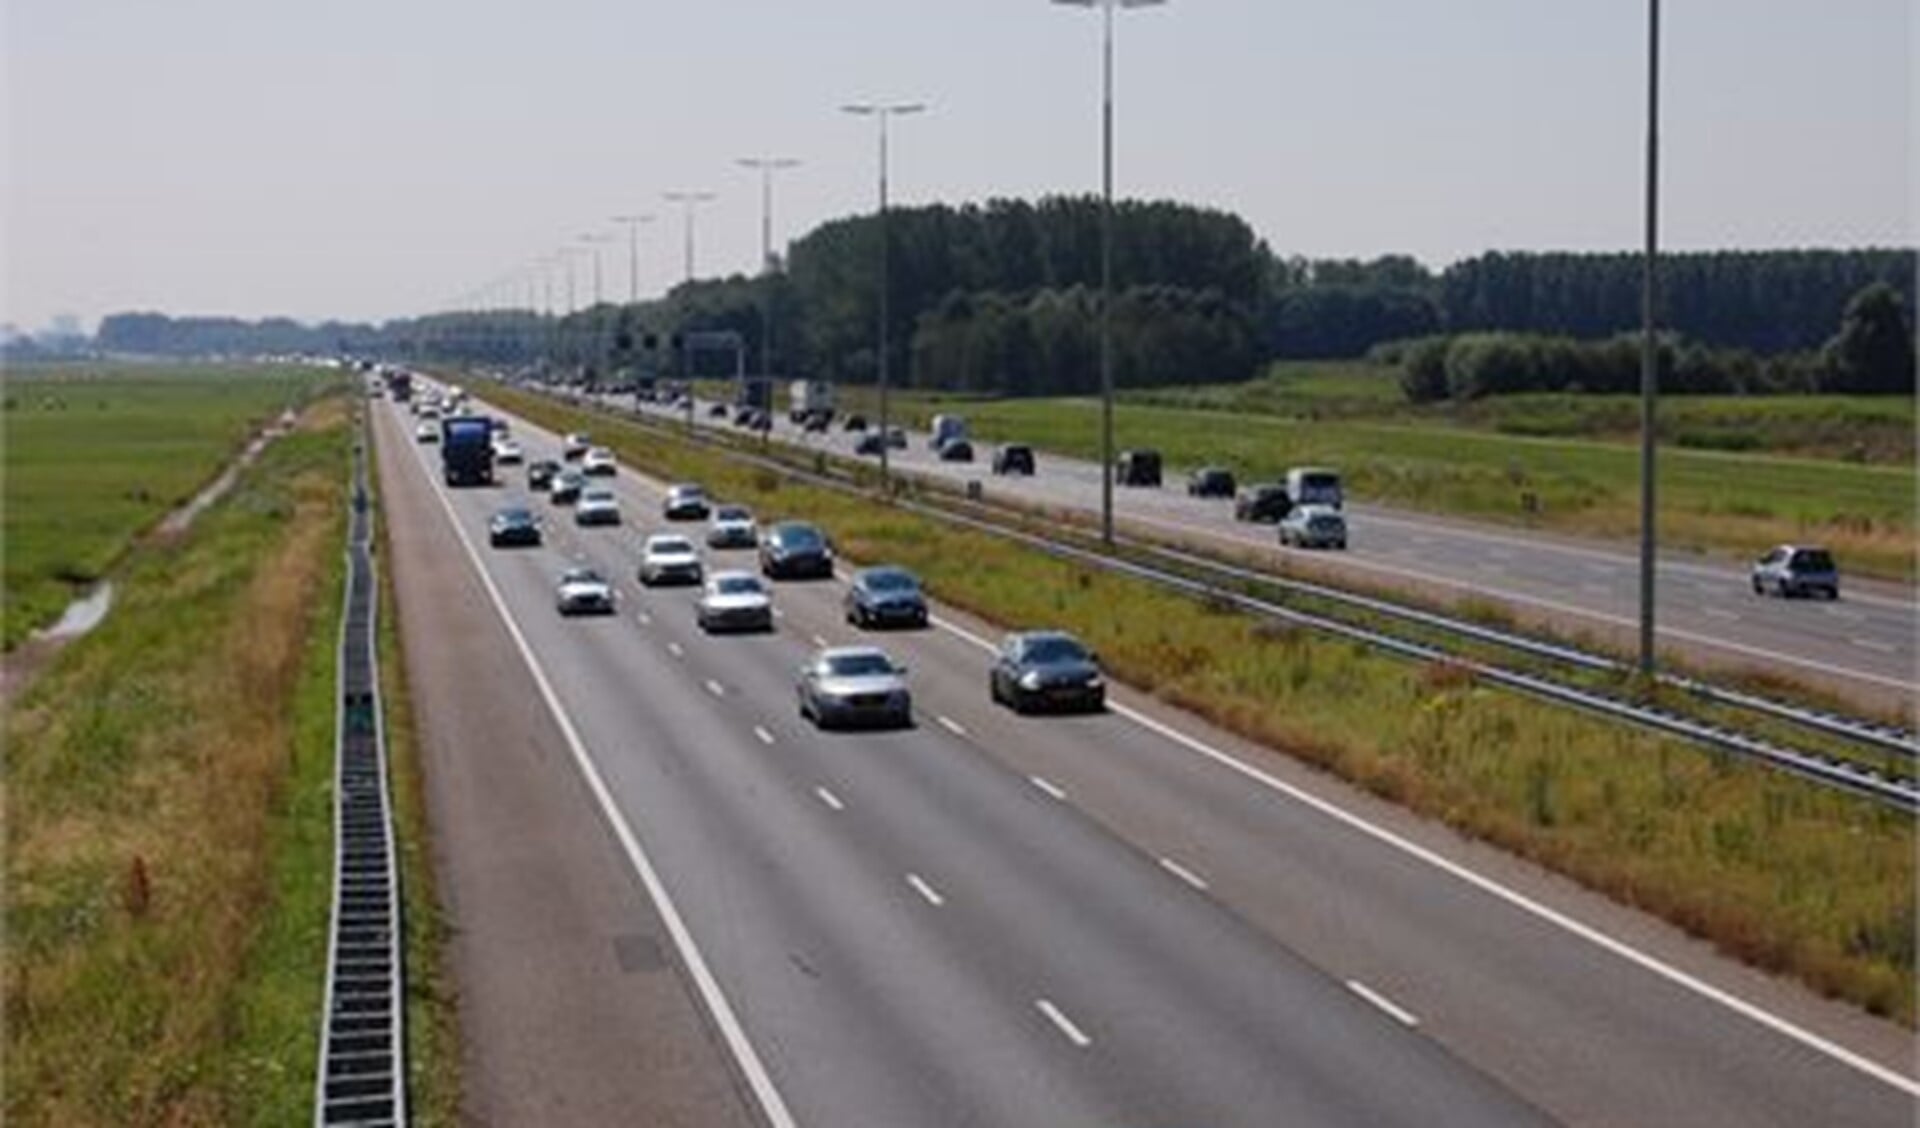 De gemeente Leidschendam-Voorburg wordt omgeven door rijkswegen met veel verkeer, dat veel fijnstof veroorzaakt (archieffoto Dick Janssen).